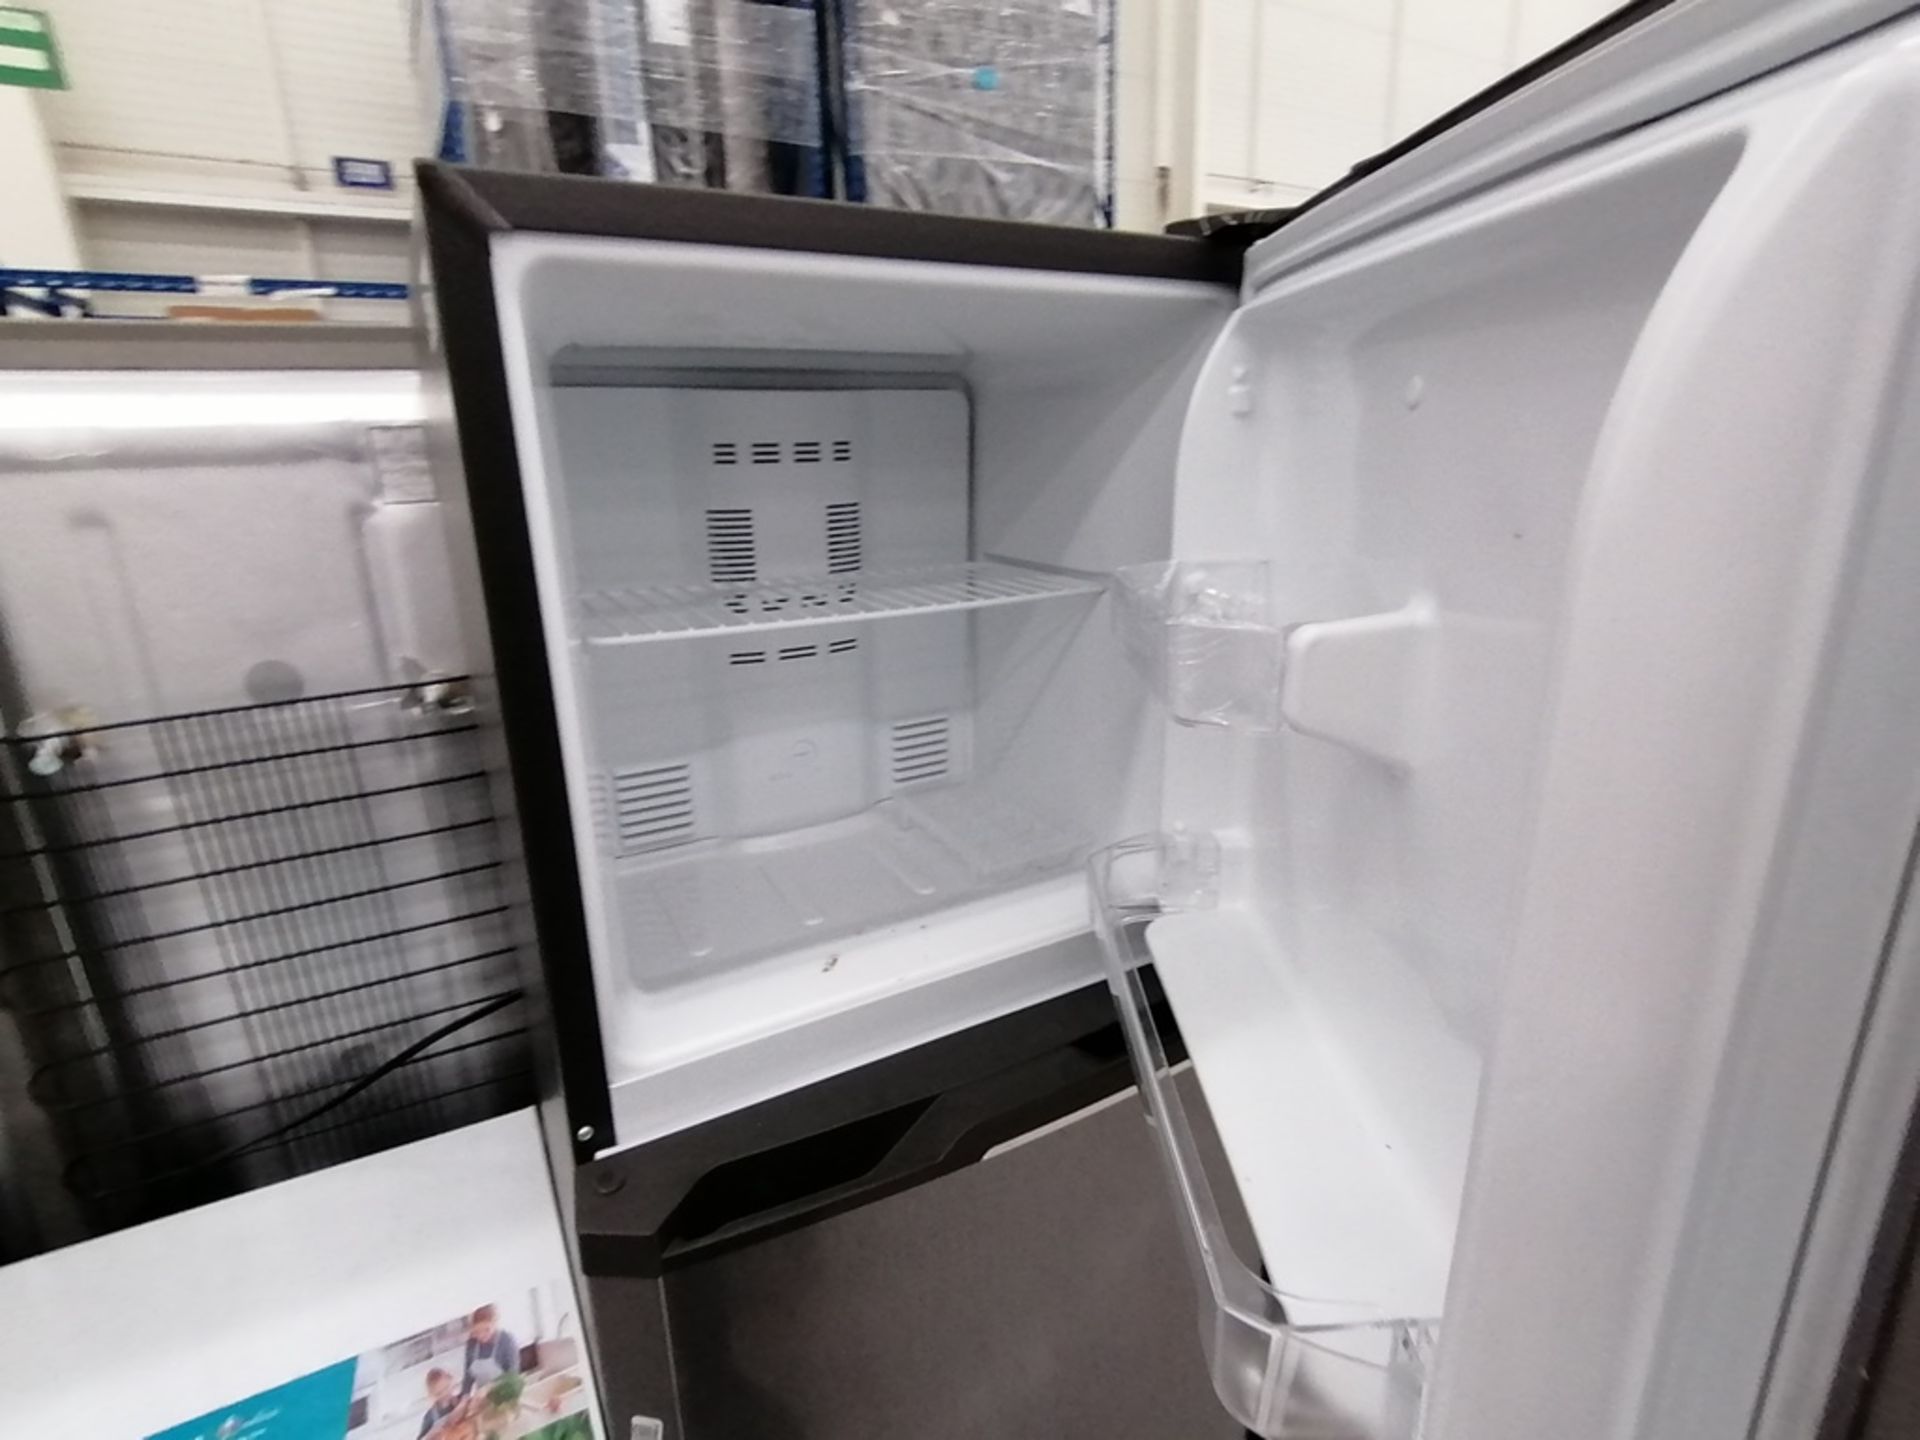 Lote de 2 refrigeradores incluye: 1 Refrigerador, Marca Mabe, Modelo RMA1025VNX, Serie 2110B623189, - Image 13 of 17